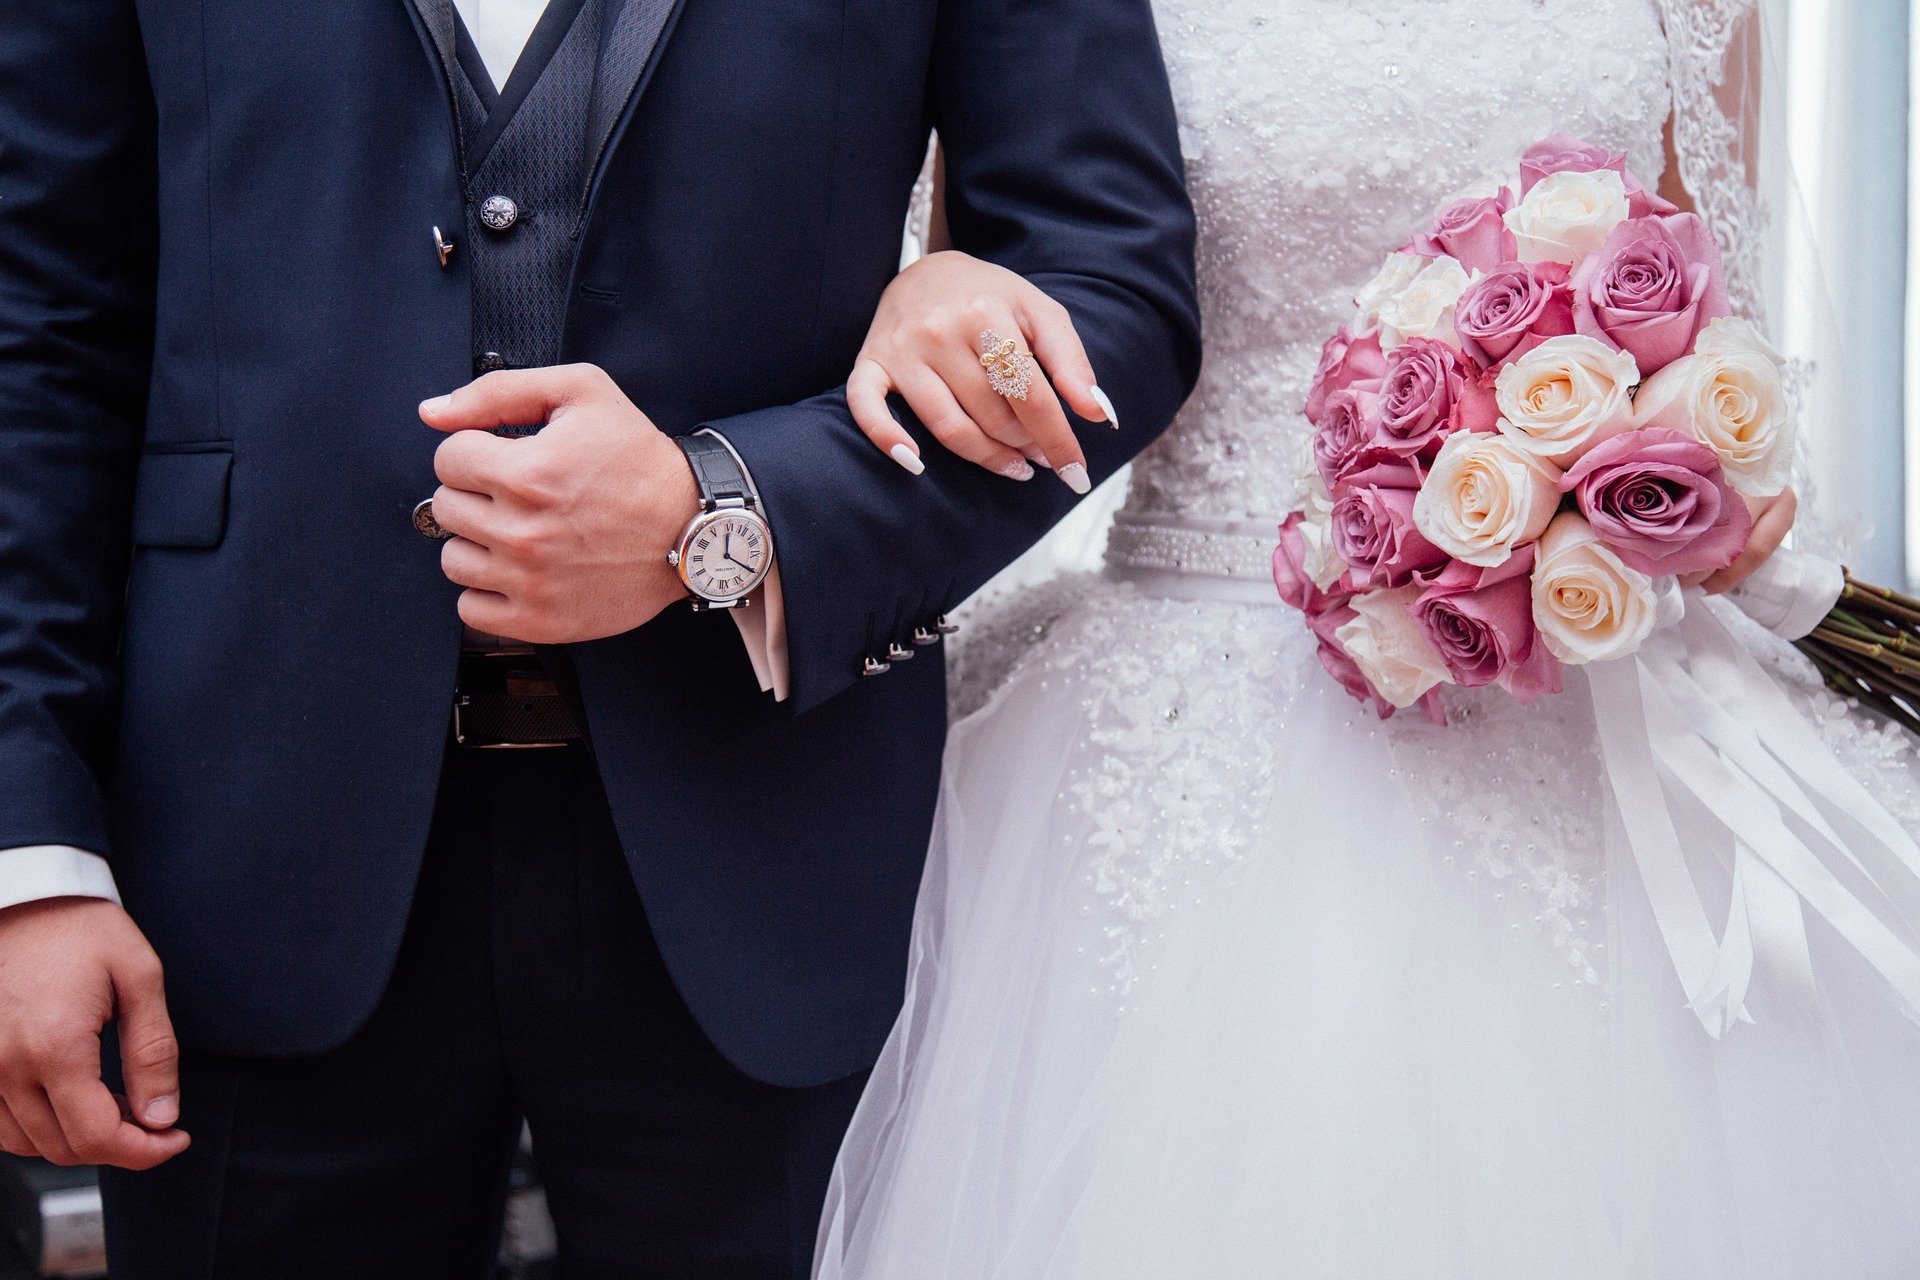 Una pareja celebra su matrimonio. | Foto: Pixabay